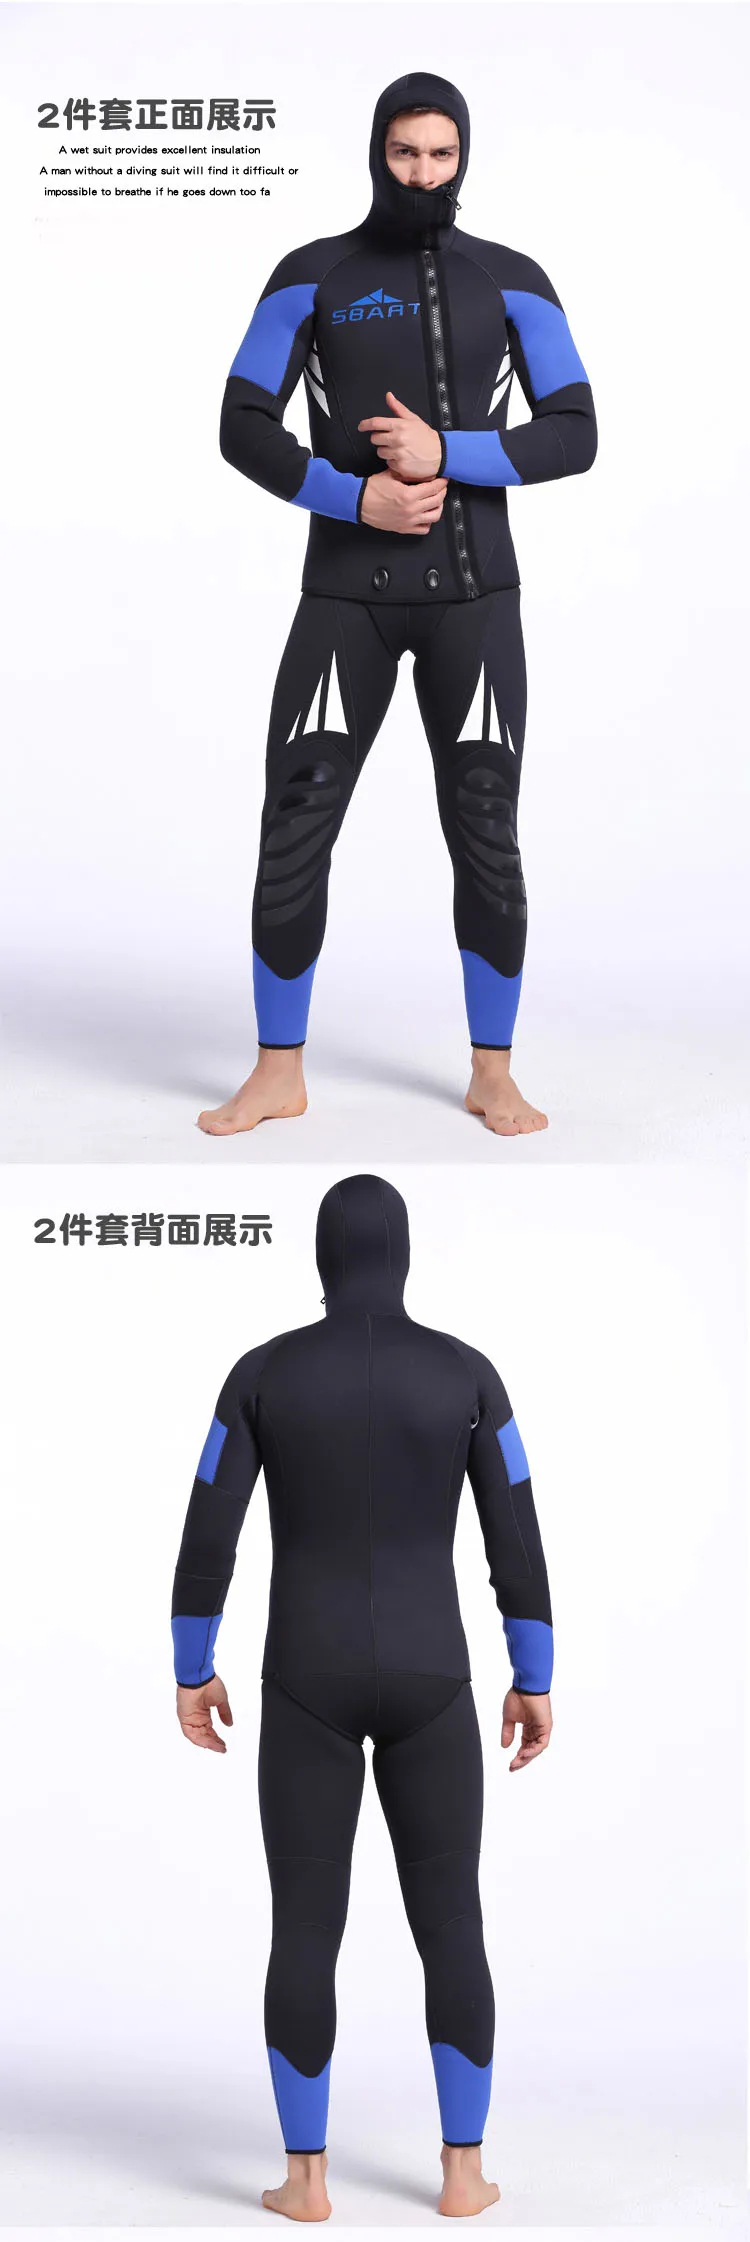 Профессиональные скакалки, 5 мм неопреновый гидрокостюм для подводного плавания, подводное снаряжение для дайвинга, Мужская футболка, набор для подводного плавания, мокрый костюм гидрокостюм K